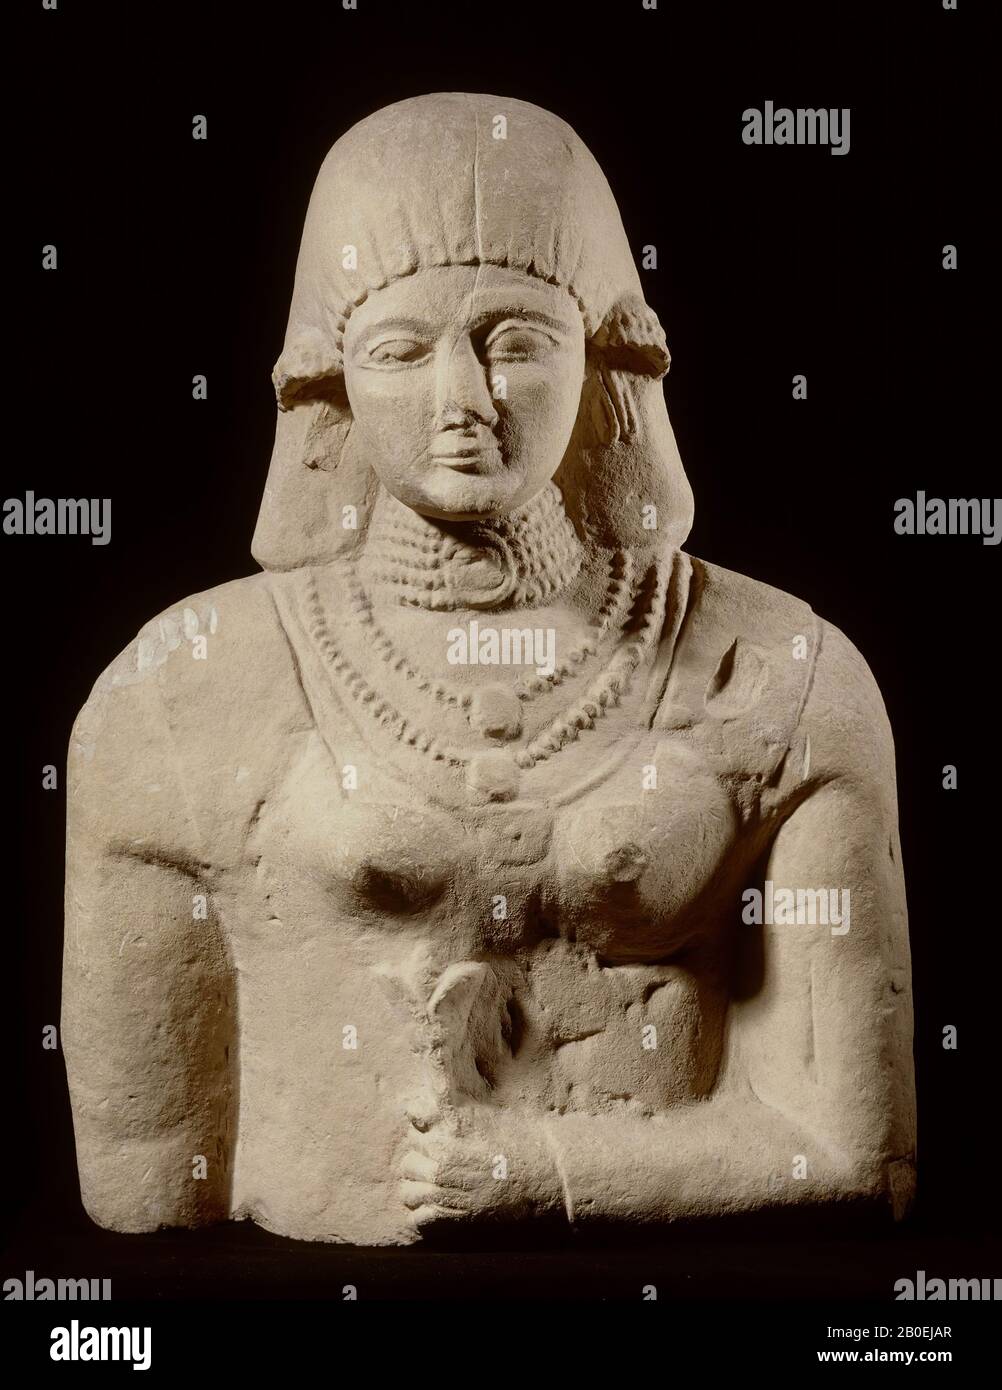 La femme est vêtue d'une robe à manches longues et ajustée sur laquelle elle porte un deuxième vêtement sans manches. Peut-être que la robe de cheveux est une perruque. Elle porte également de la bijouterie dans ses oreilles. Les yeux en forme d'amande et le sourire archaïque datent l'image au 6ème siècle avant J.-C., statue féminine, calcaire, 71,2 x 54 x 35 cm, archaïque 555-545 avant J.-C., Grèce Banque D'Images